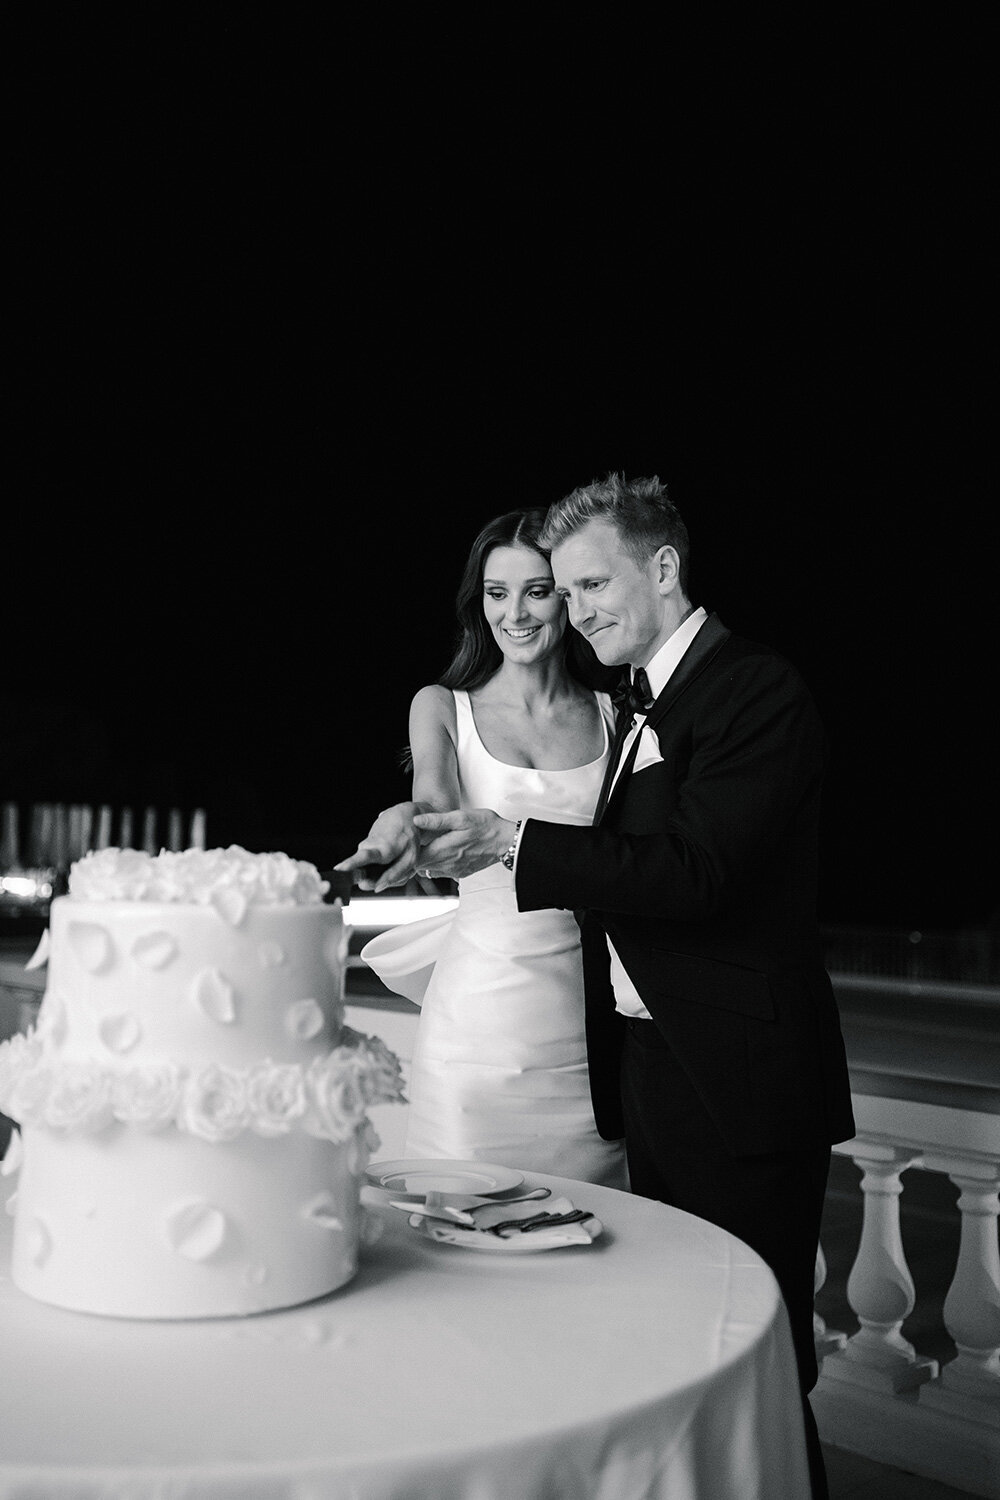 classic black and white wedding photo of couple cutting wedding cake